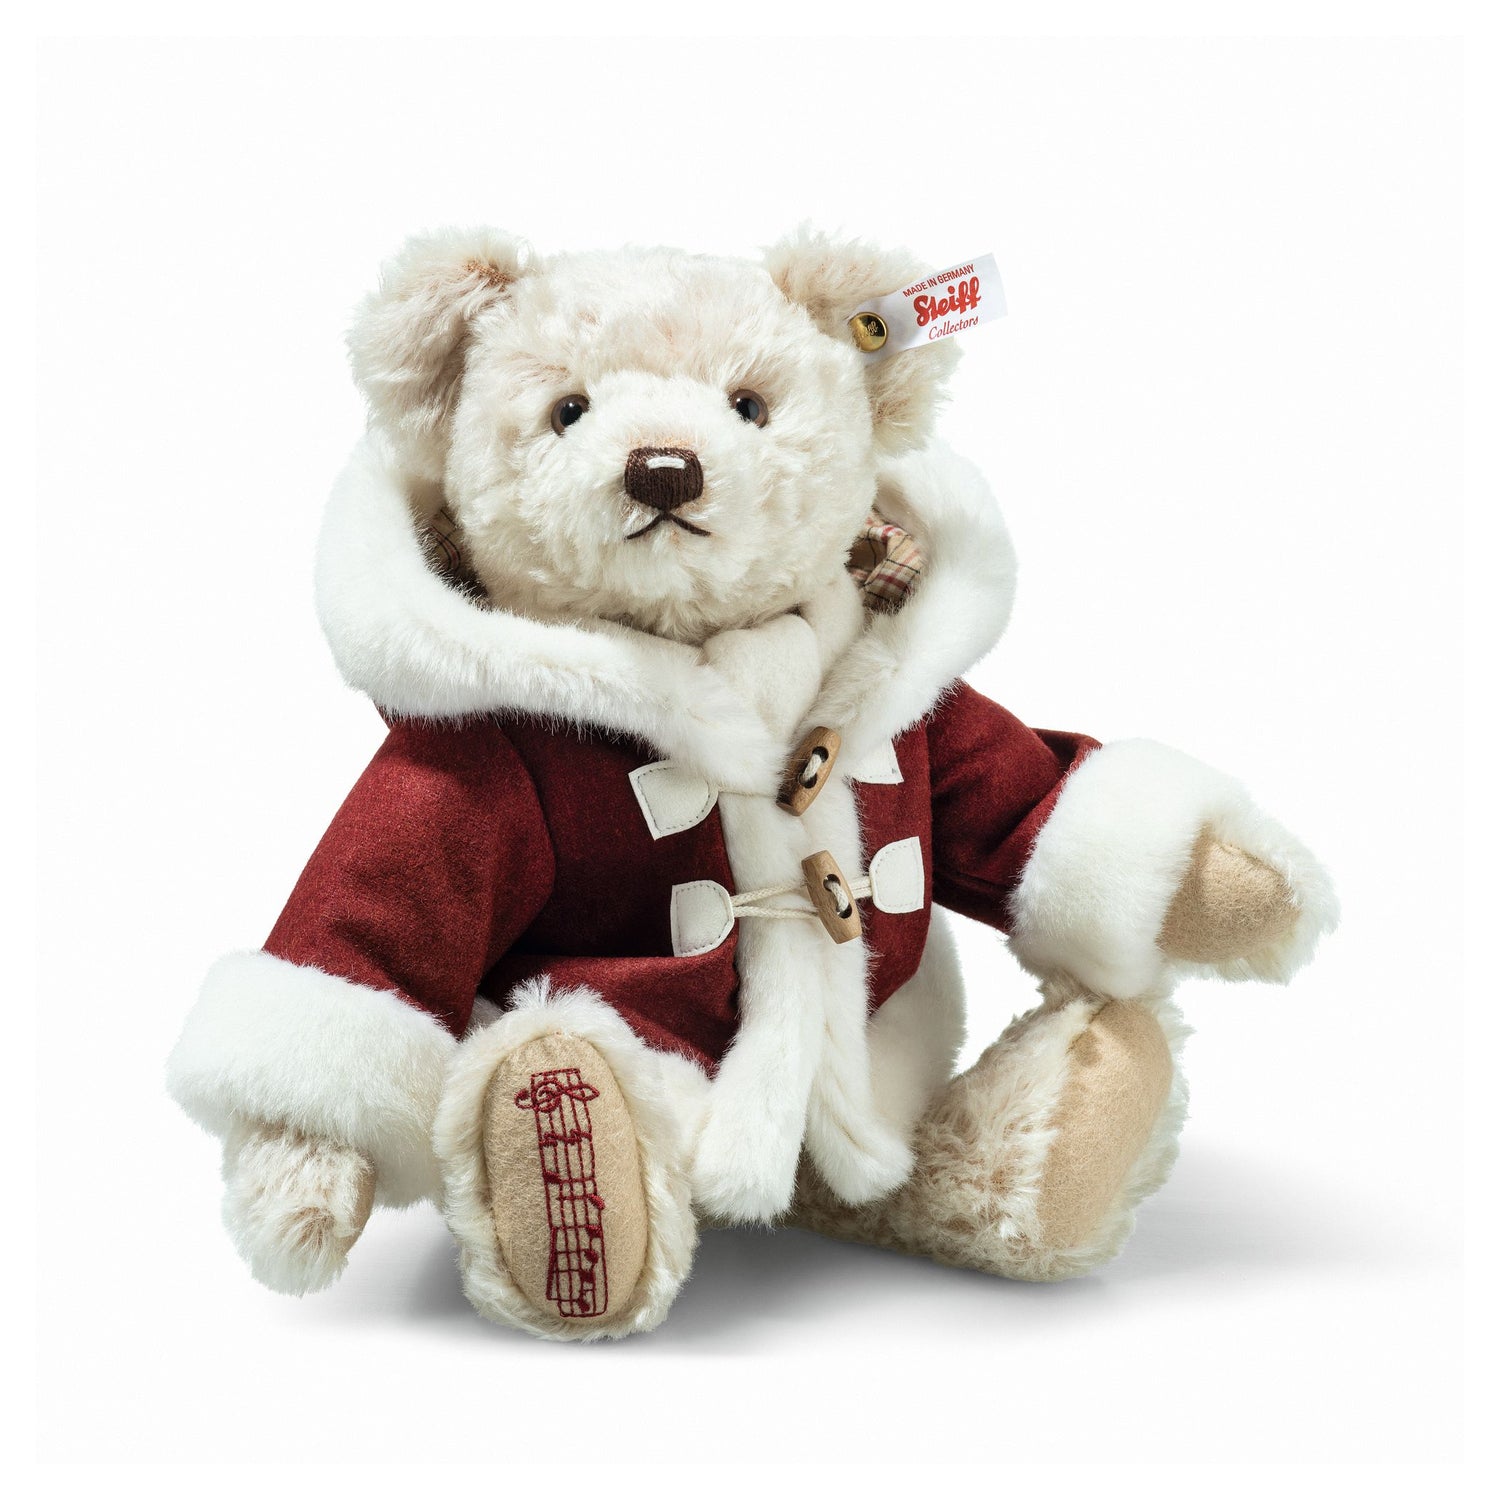 Kris Christmas Teddy Bear